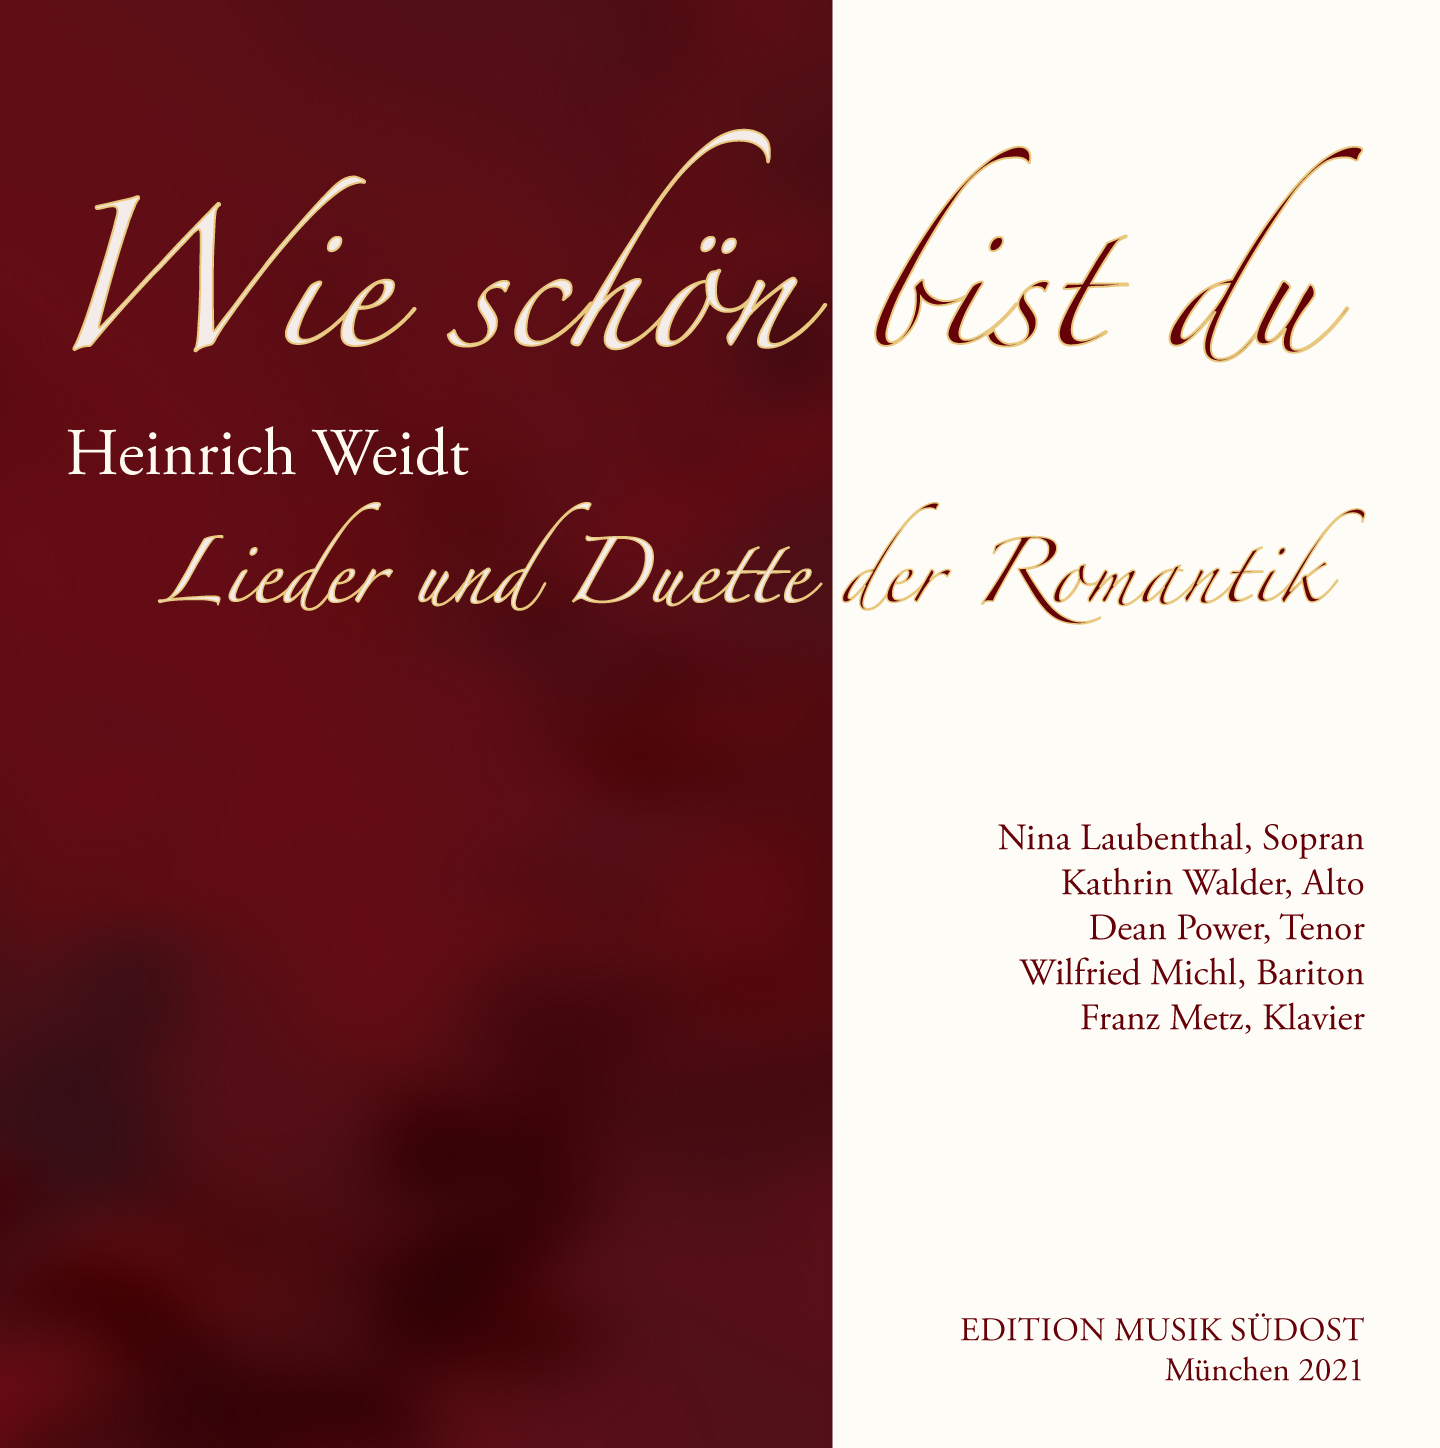 Heinrich Weidt: Wie schön bist du - Neue CD mit Liedern und Duetten der Romantik erschienen